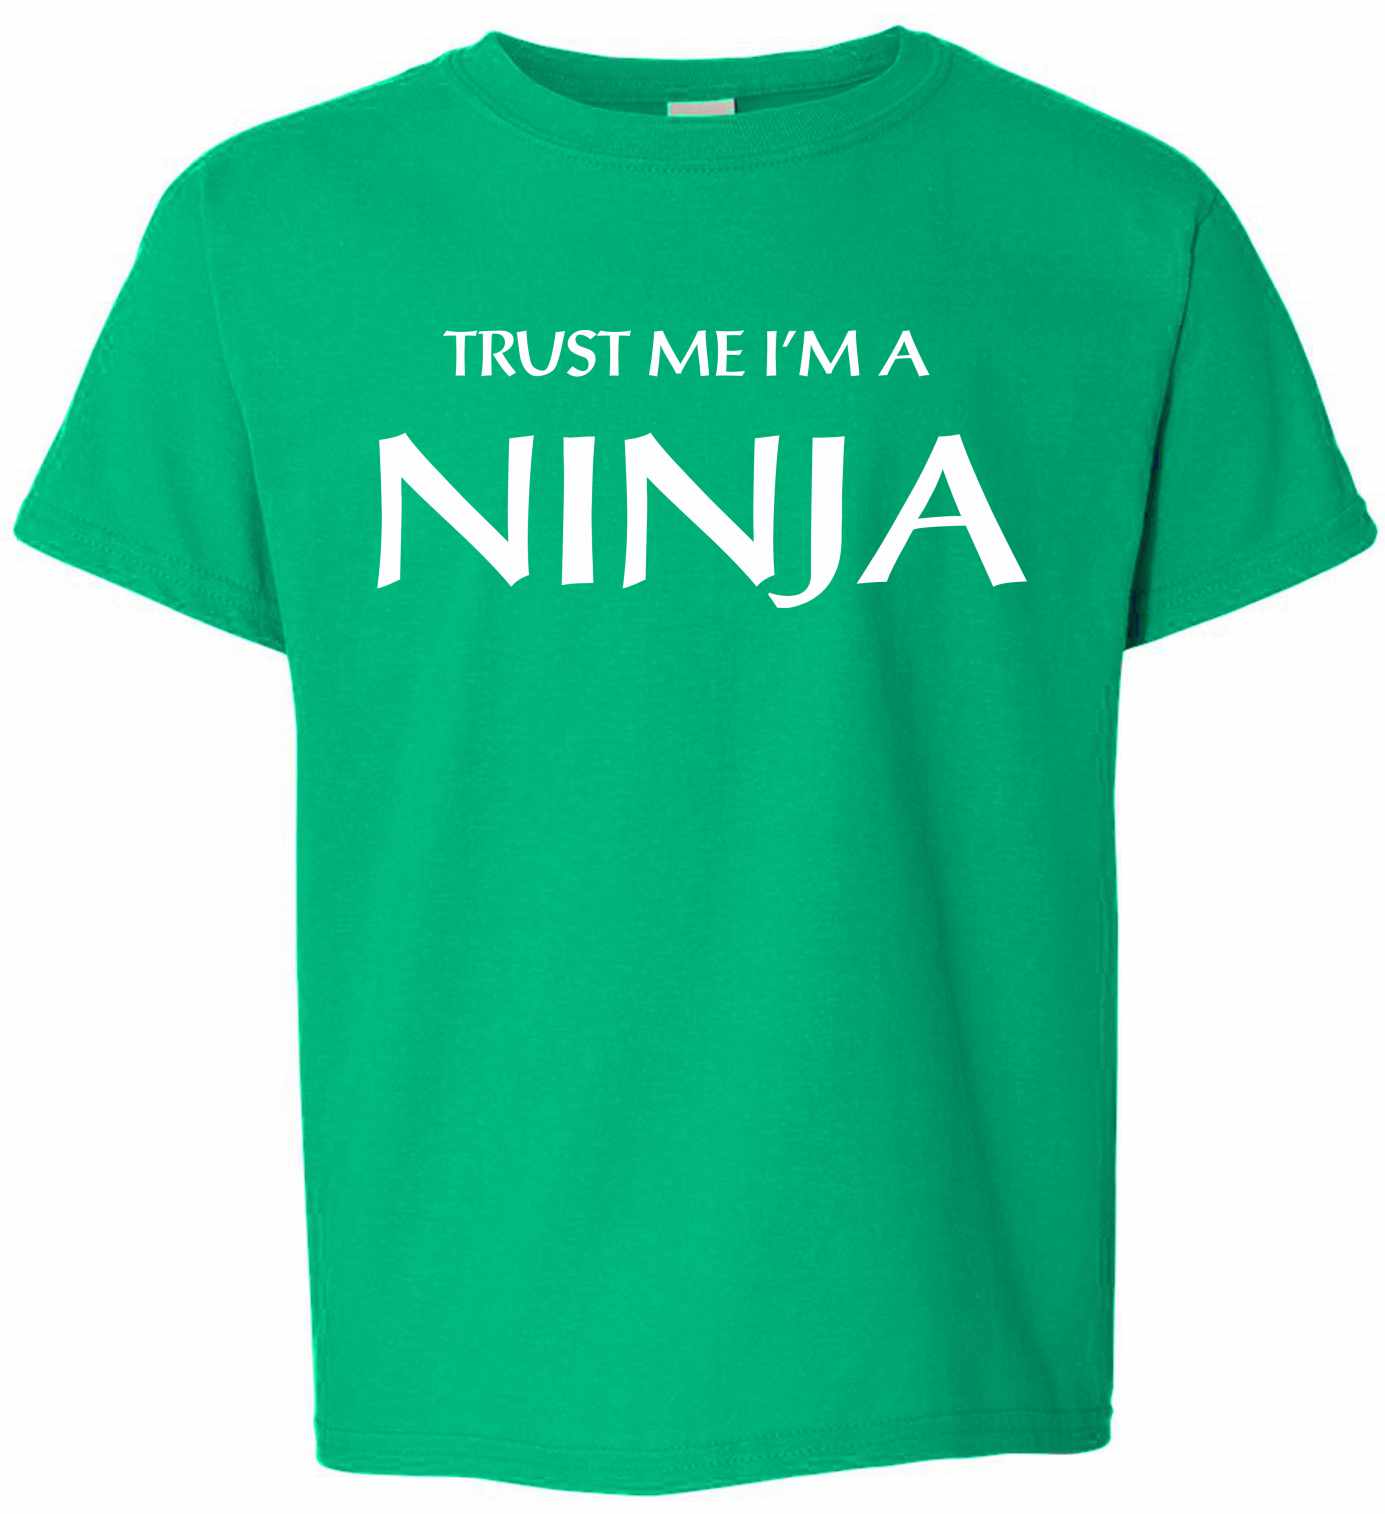 Trust Me I'm a NINJA on Kids T-Shirt